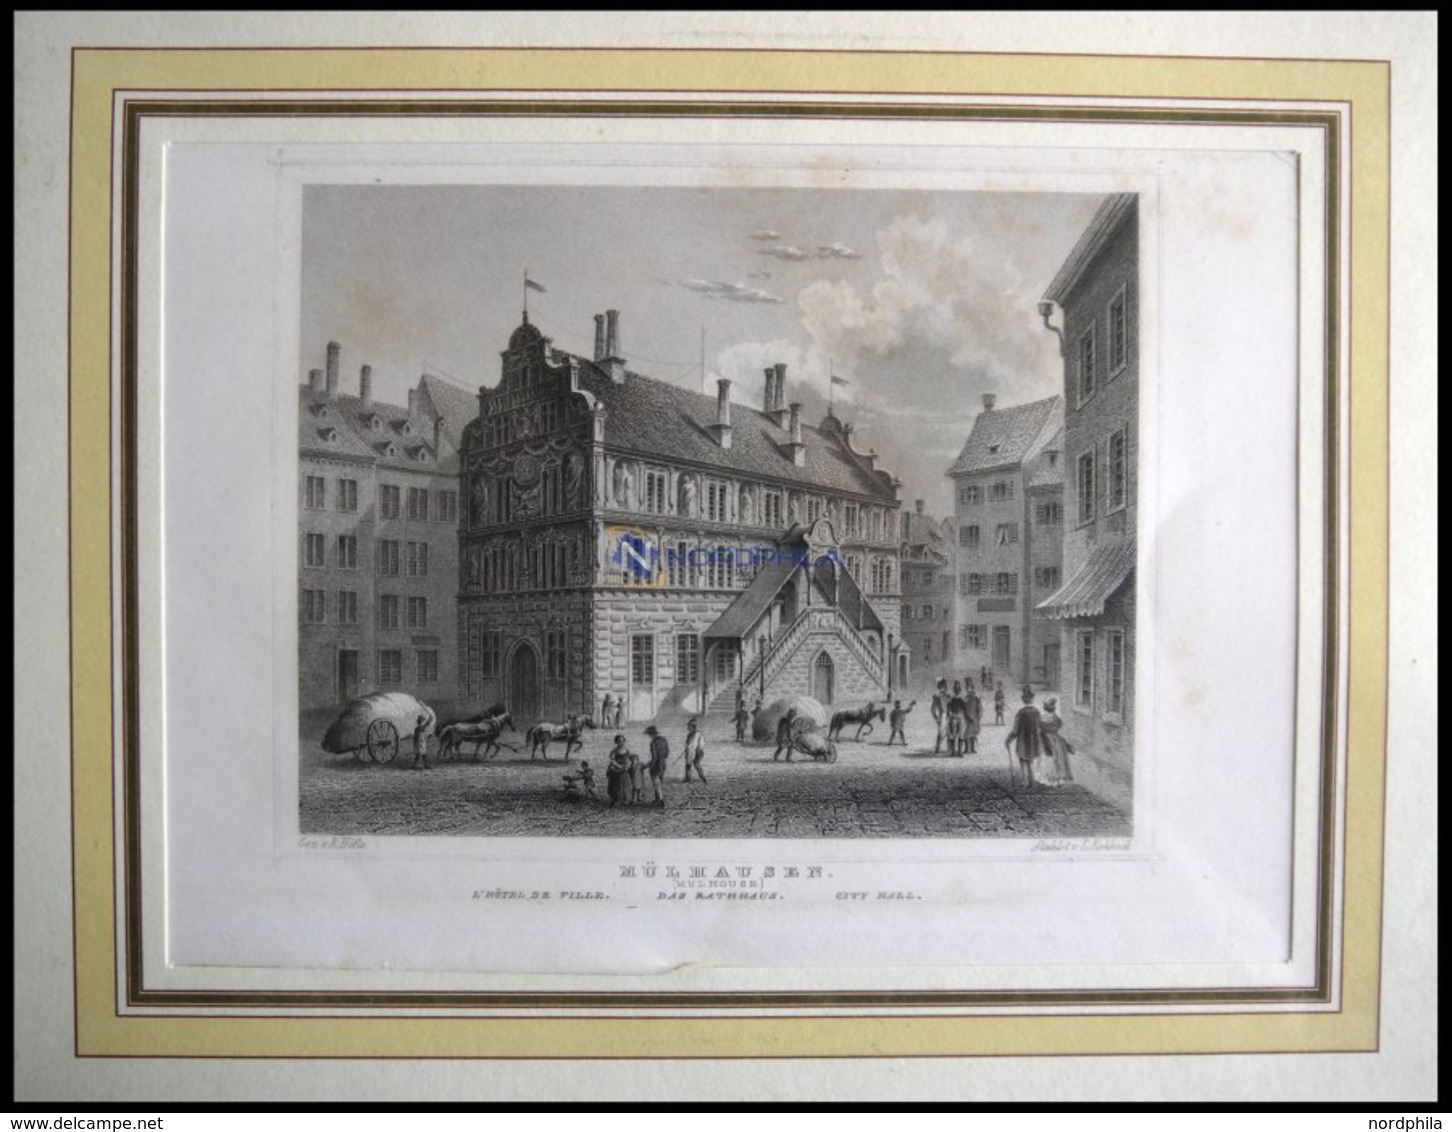 MÜHLHAUSEN: Das Rathaus, Stahlstich Von Höfle/Rohbock Um 1840 - Litografia